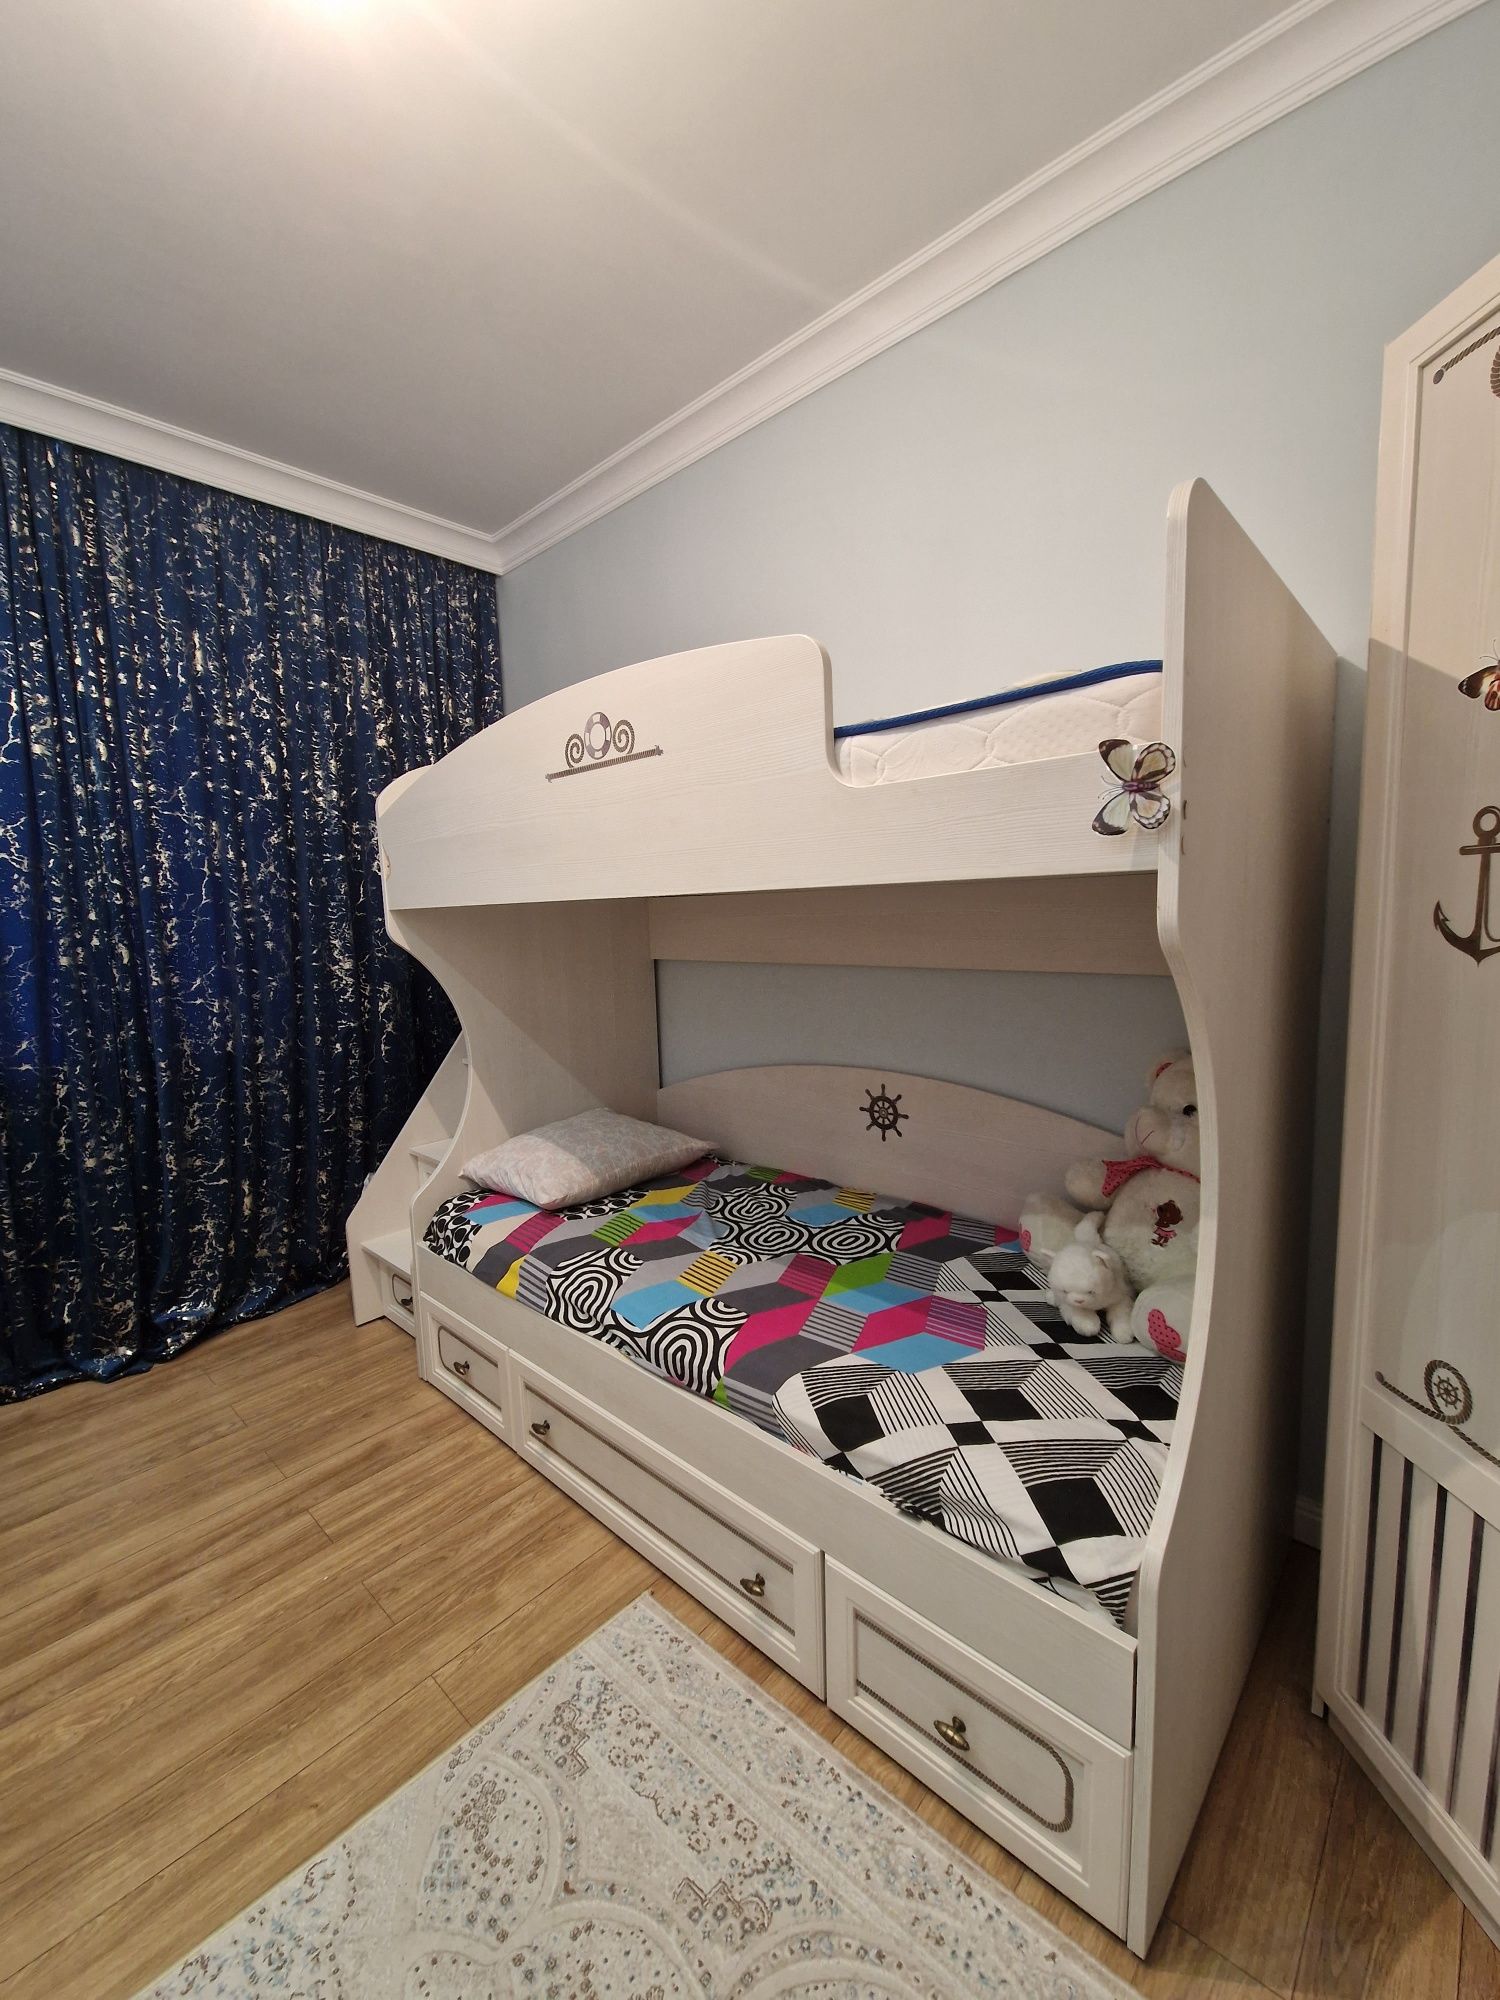 Двухярусная кровать, угловой шкаф для одежды, и шкаф-письменный стол